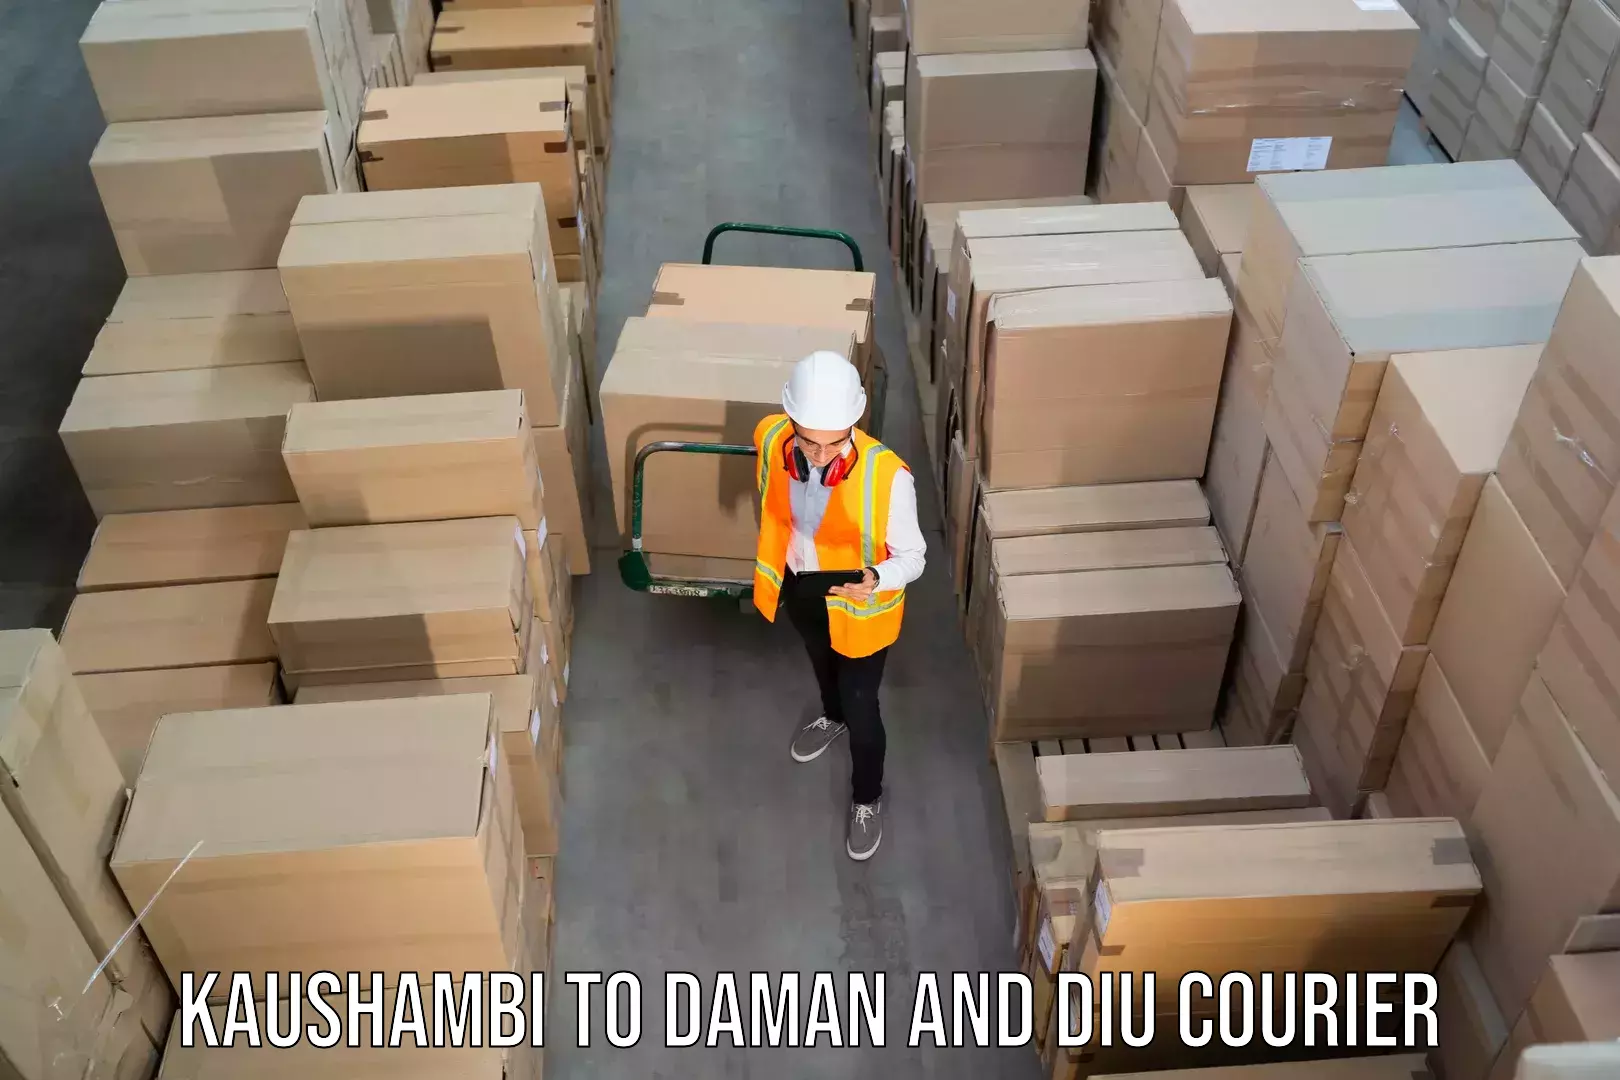 Smart shipping technology Kaushambi to Daman and Diu